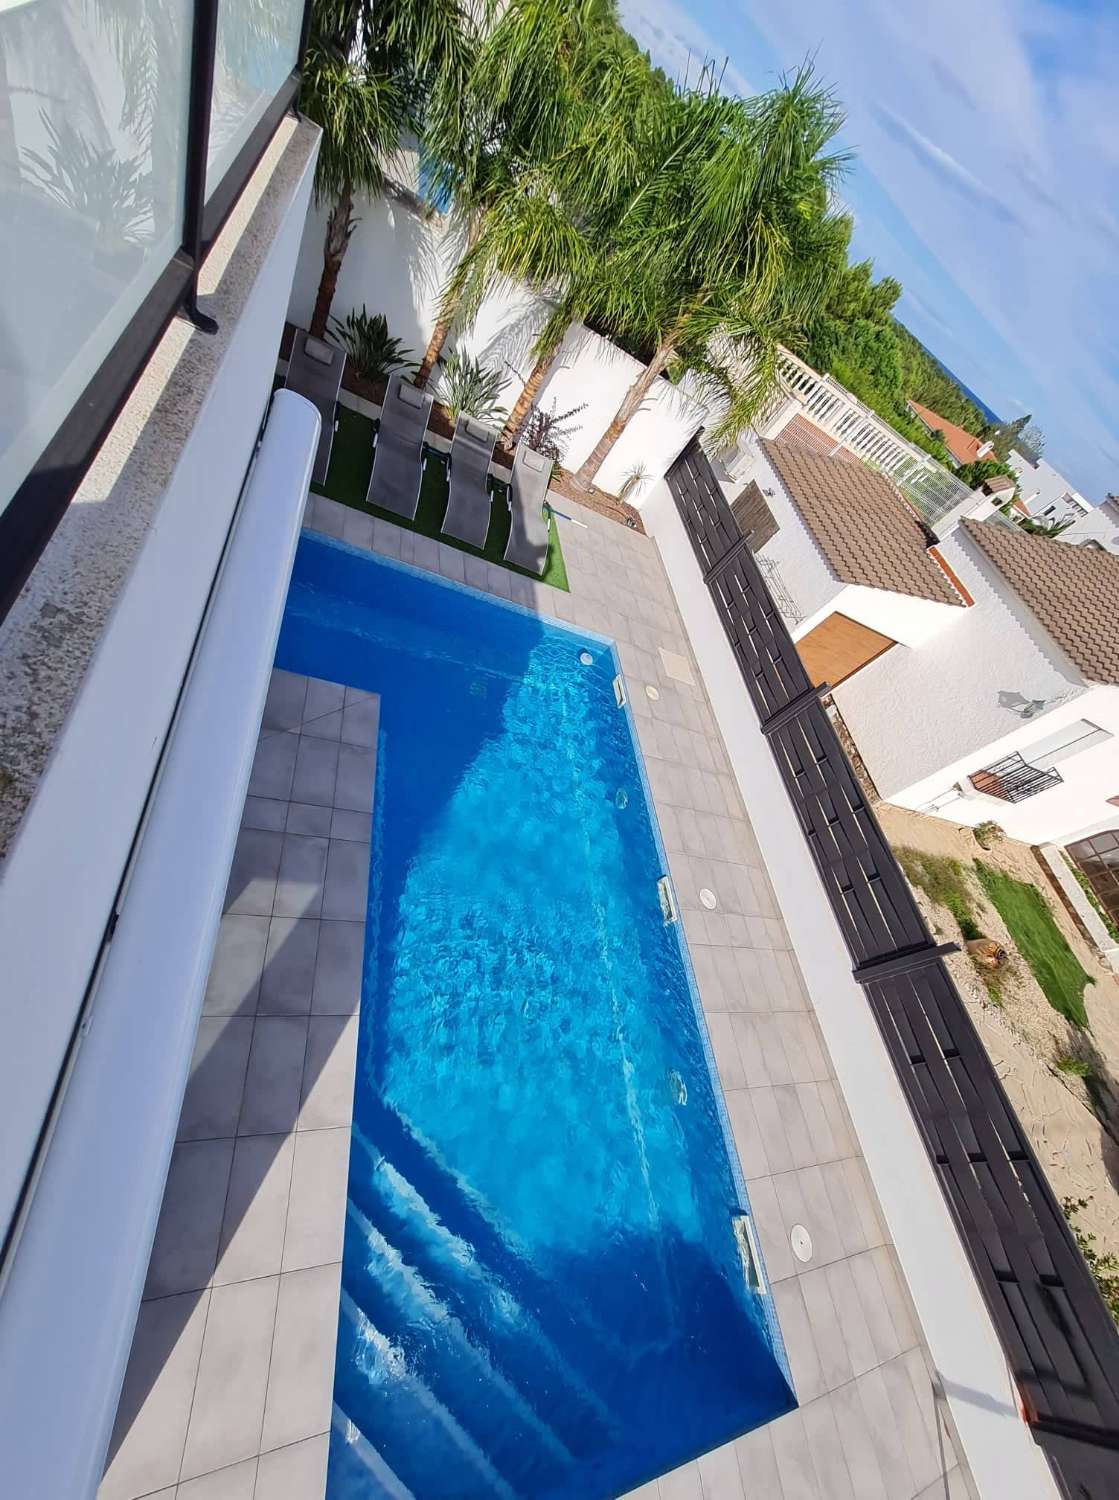 Hermosa casa moderna con piscina privada